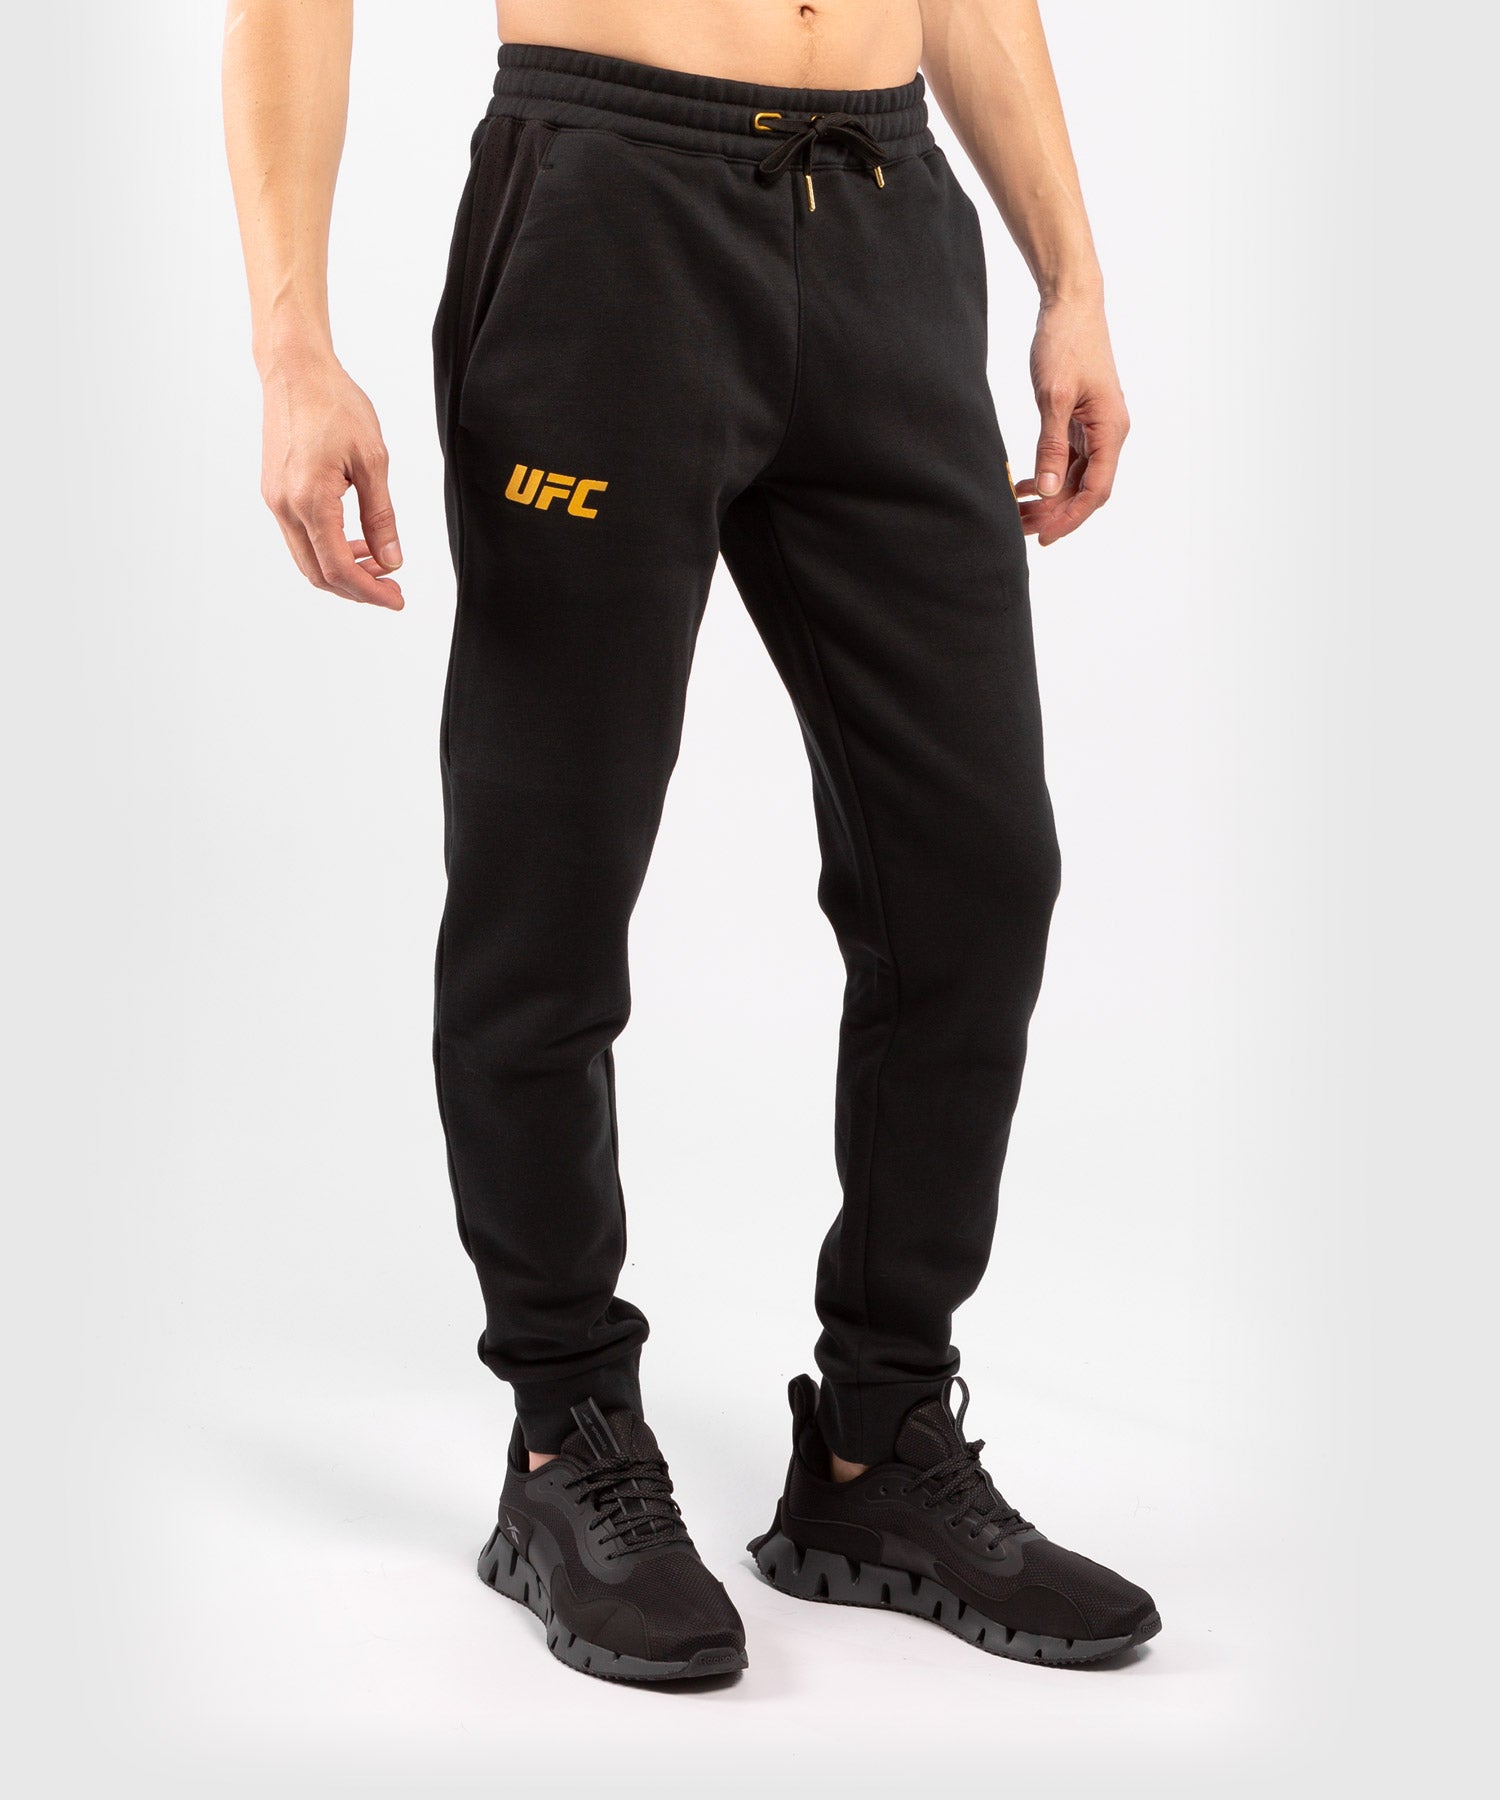 UFC Venum Men's sweat pants Joggers size L / 30-34 X 28